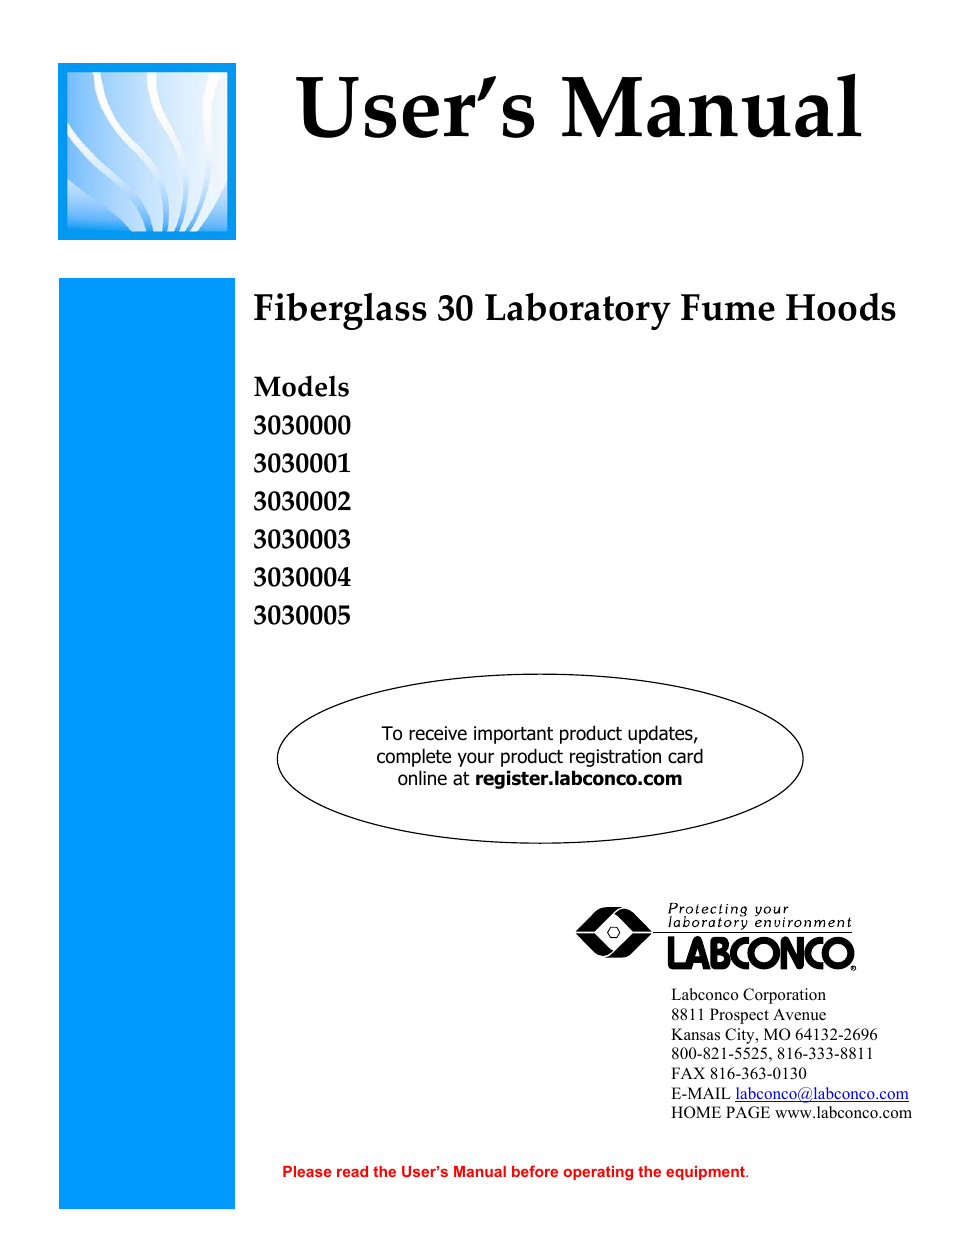 Fiberglass 30 Laboratory Fume Hoods 3030001